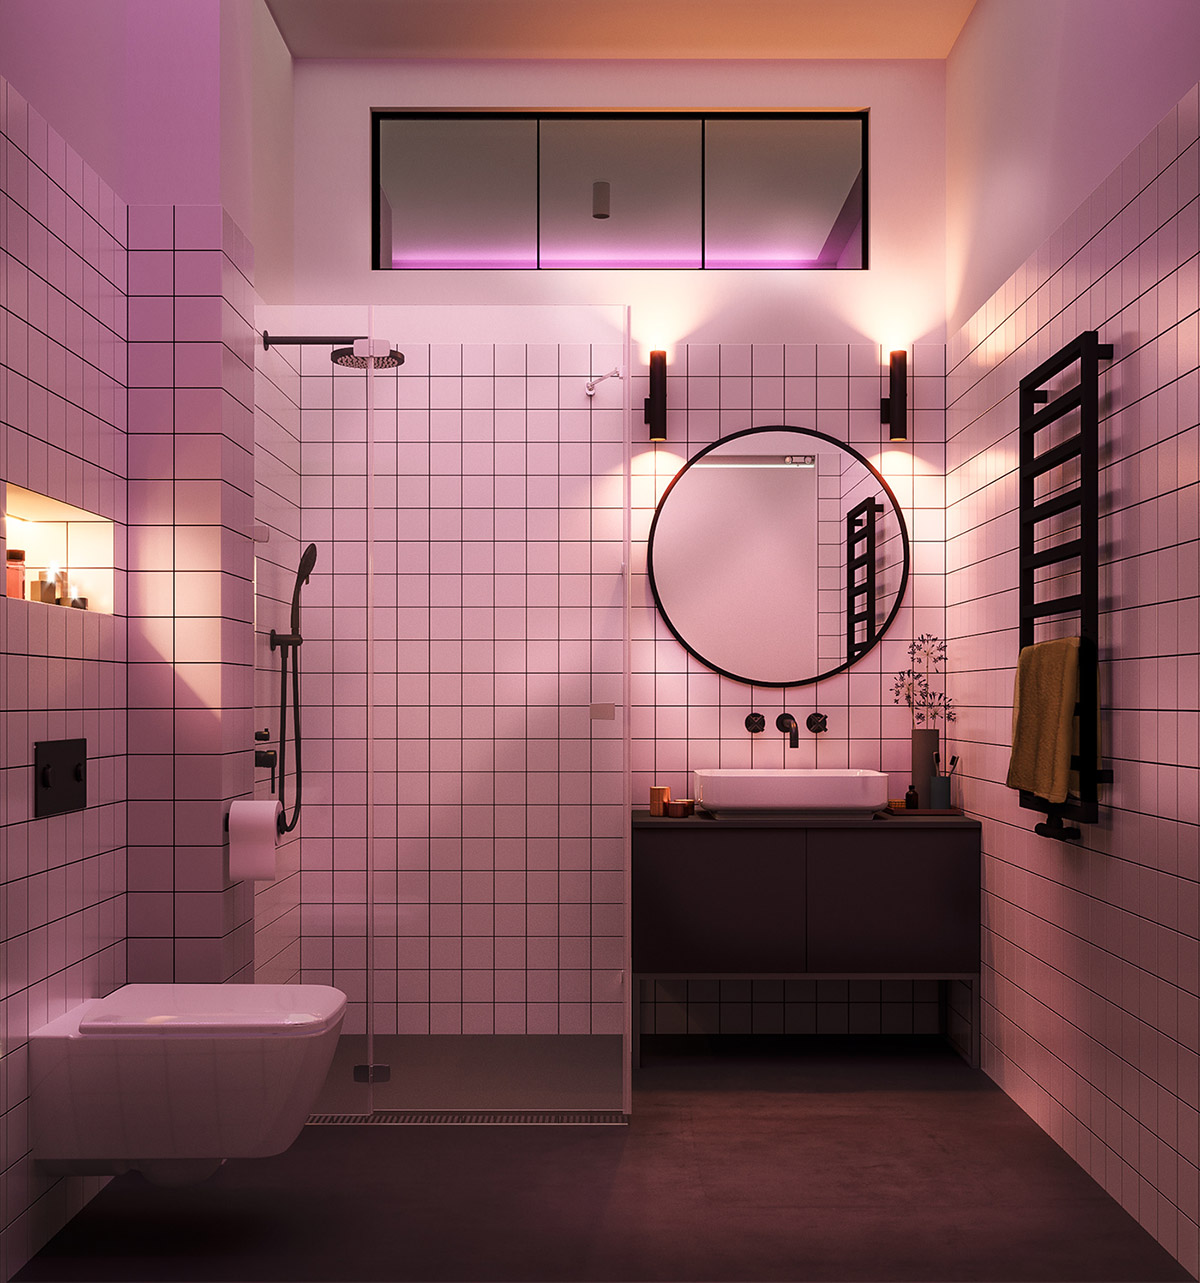 Chưa dừng lại ở đó, phòng tắm này còn khiến chúng ta bất ngờ bởi sự chuyển đổi màu sắc của hệ thống đèn chiếu sáng, kết hợp với tấm gương lớn giúp không gian trở nên lung linh và đầy quyến rũ.